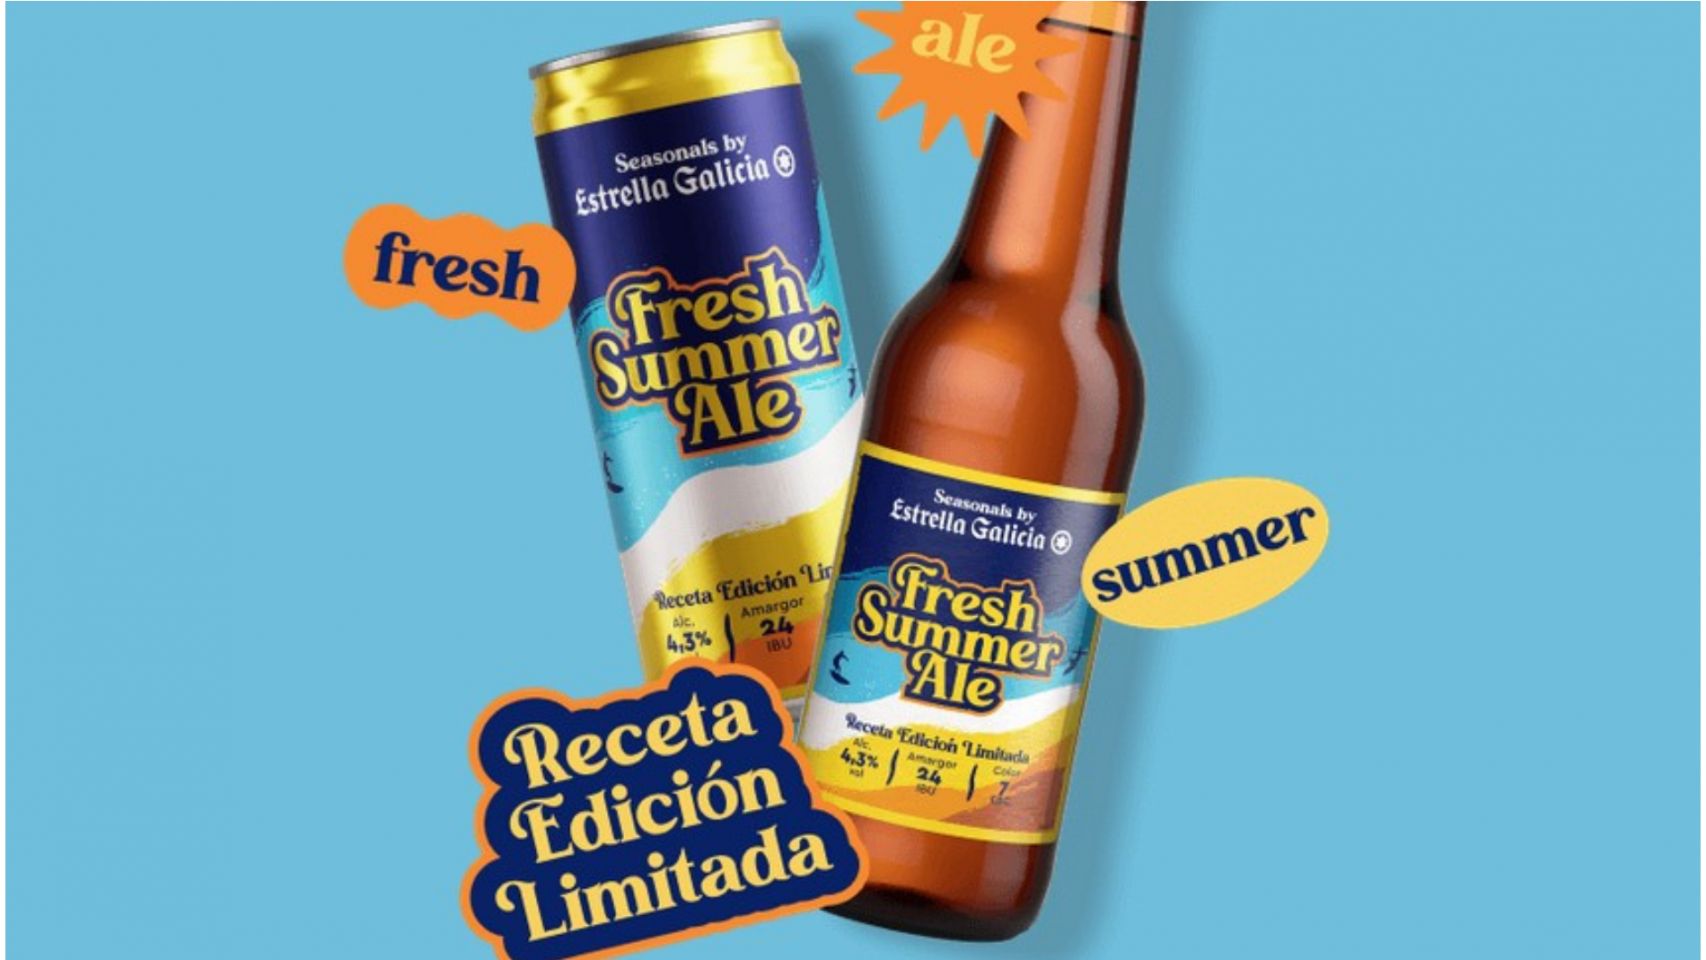 La nueva cerveza de Estrella Galicia para el verano